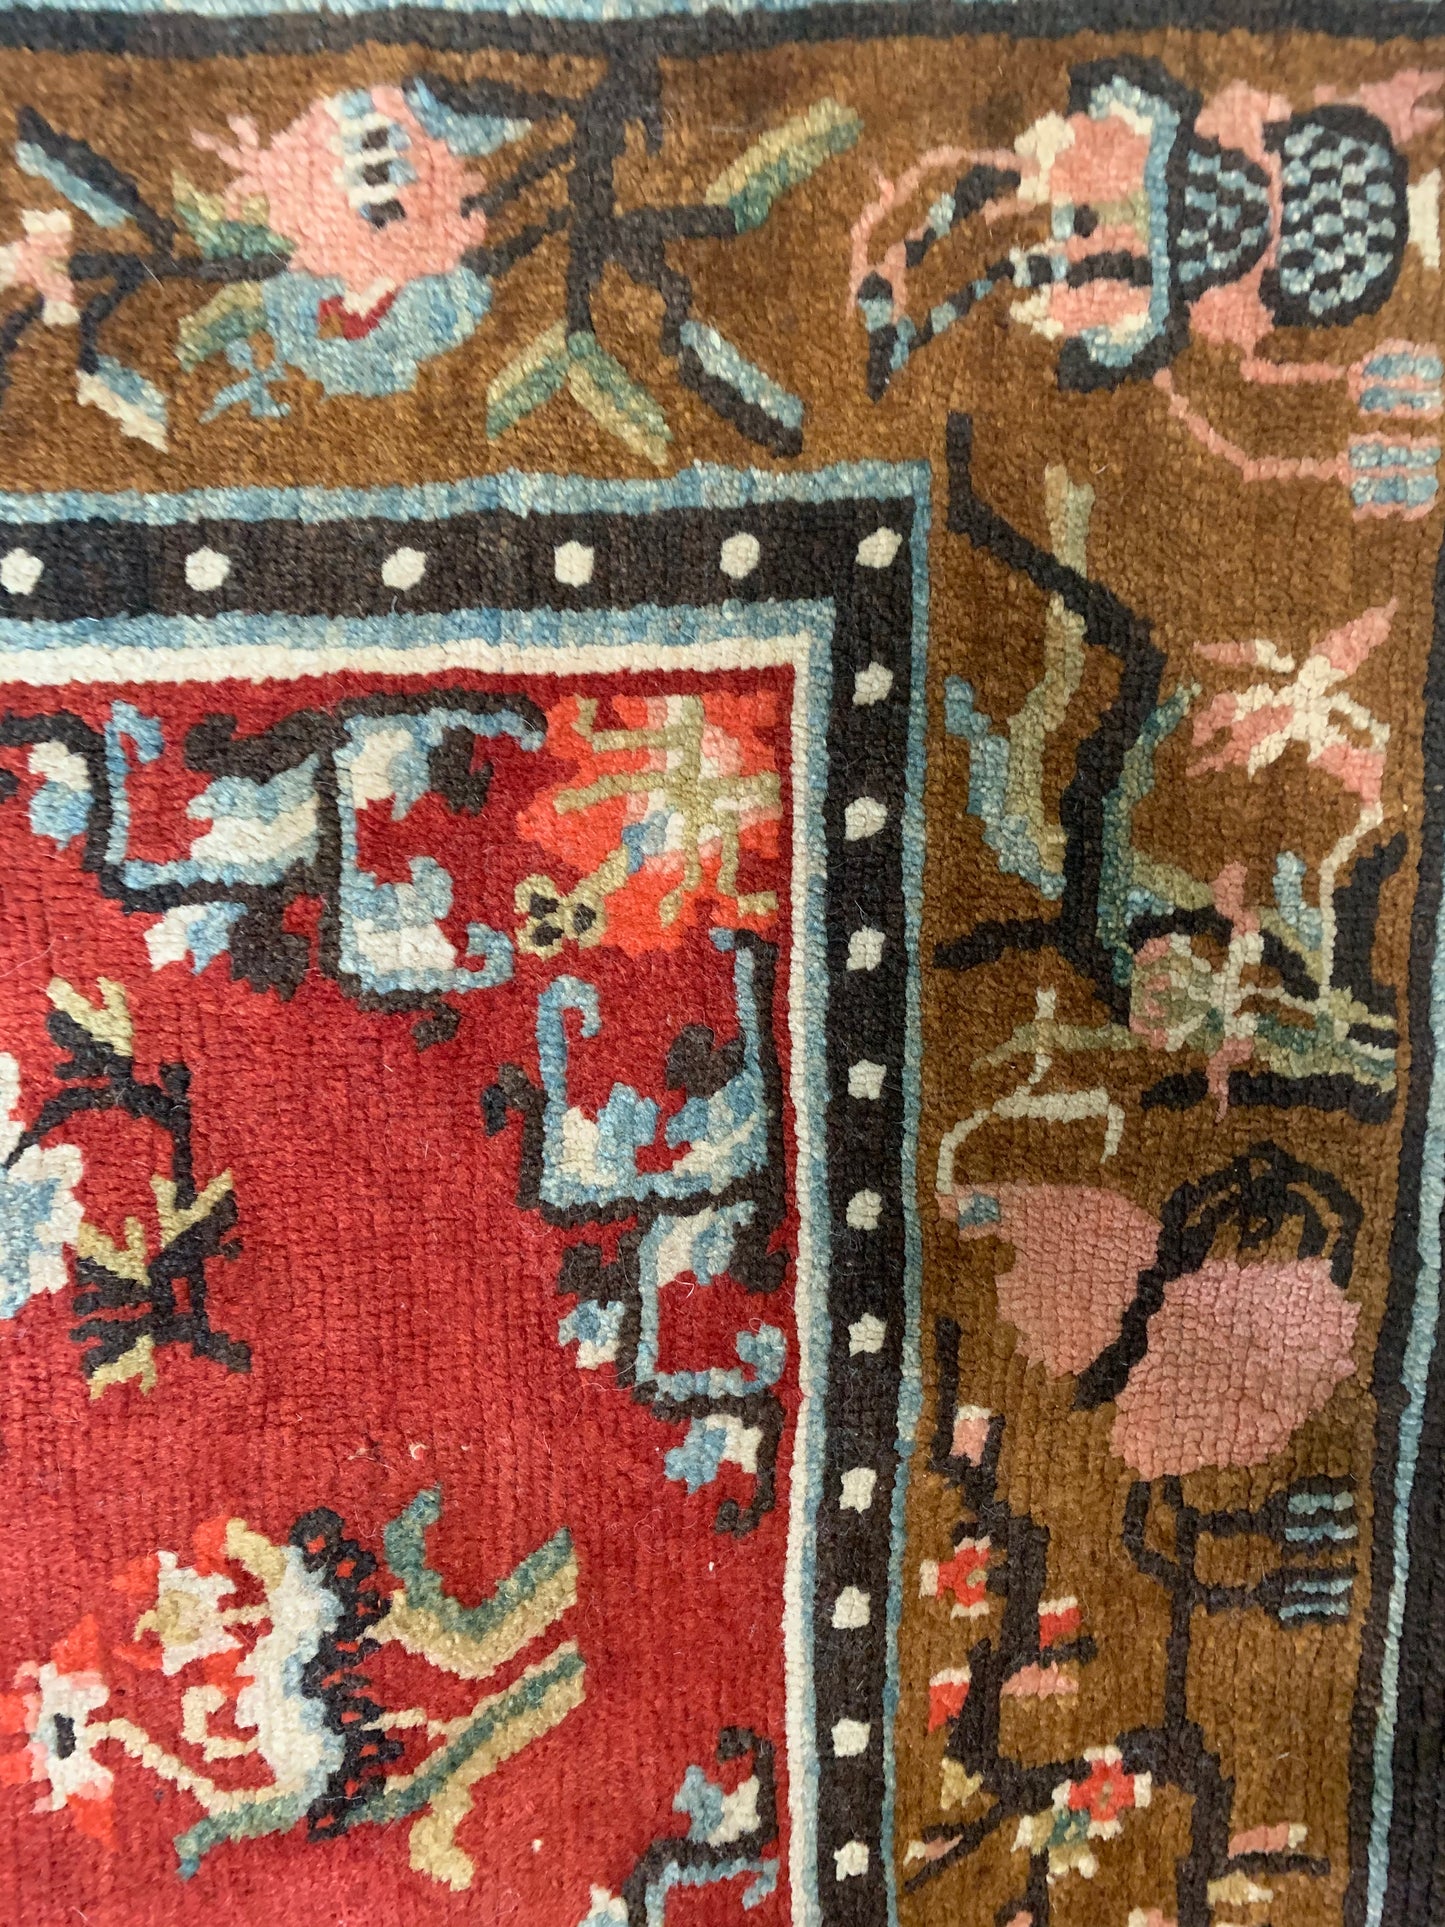 An antique Tibetan wool rug